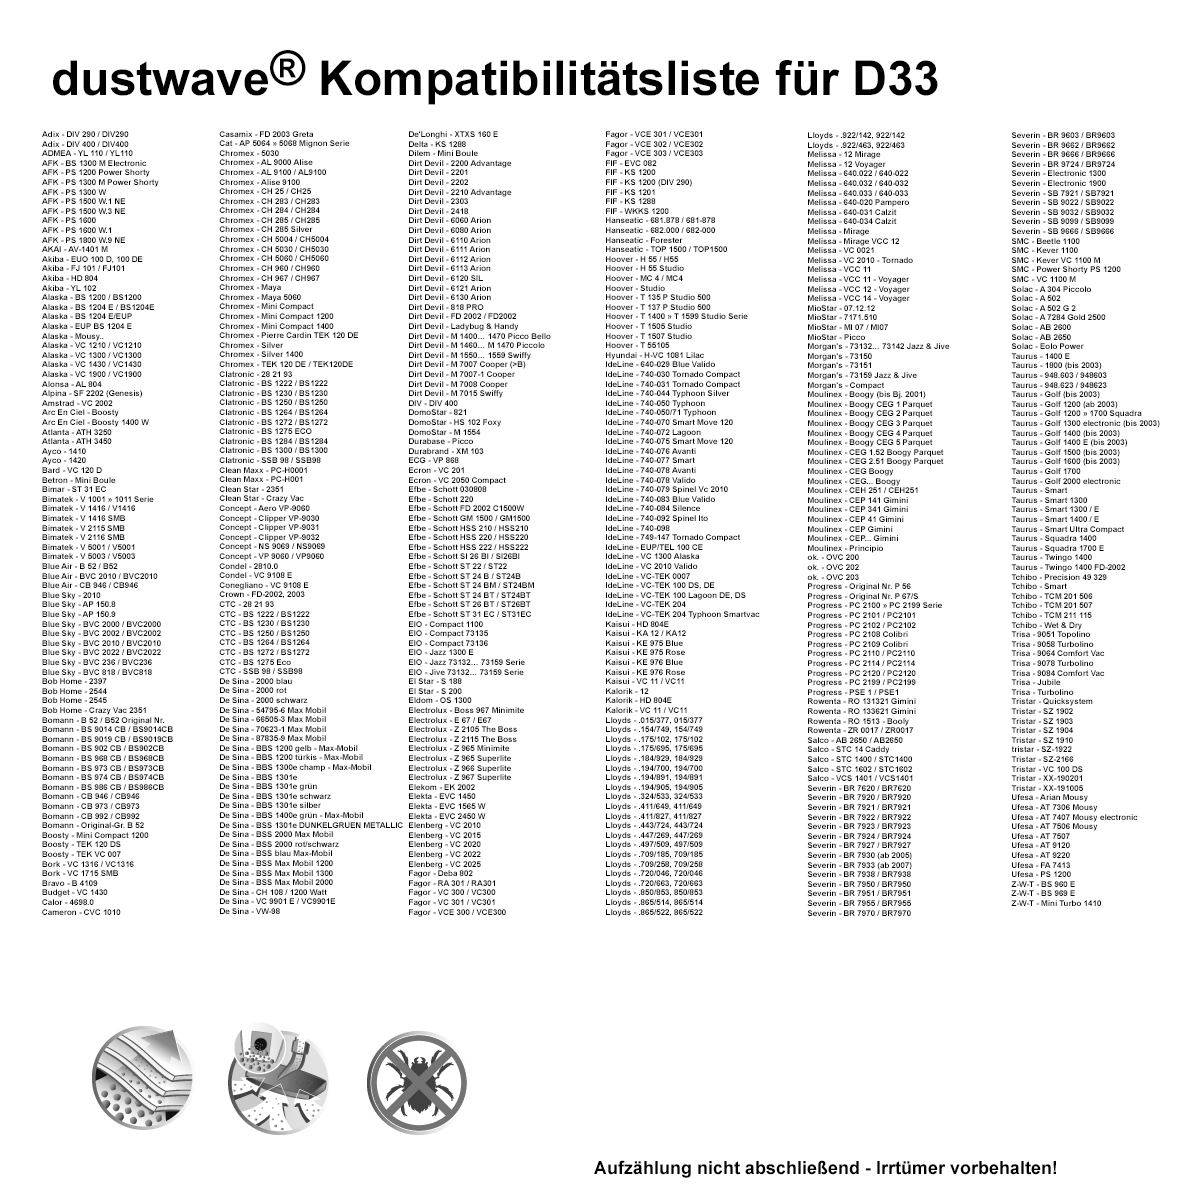 Dustwave® 20 Staubsaugerbeutel für AFK PS 1500 W.3 NE - hocheffizient mit Hygieneverschluss - Made in Germany